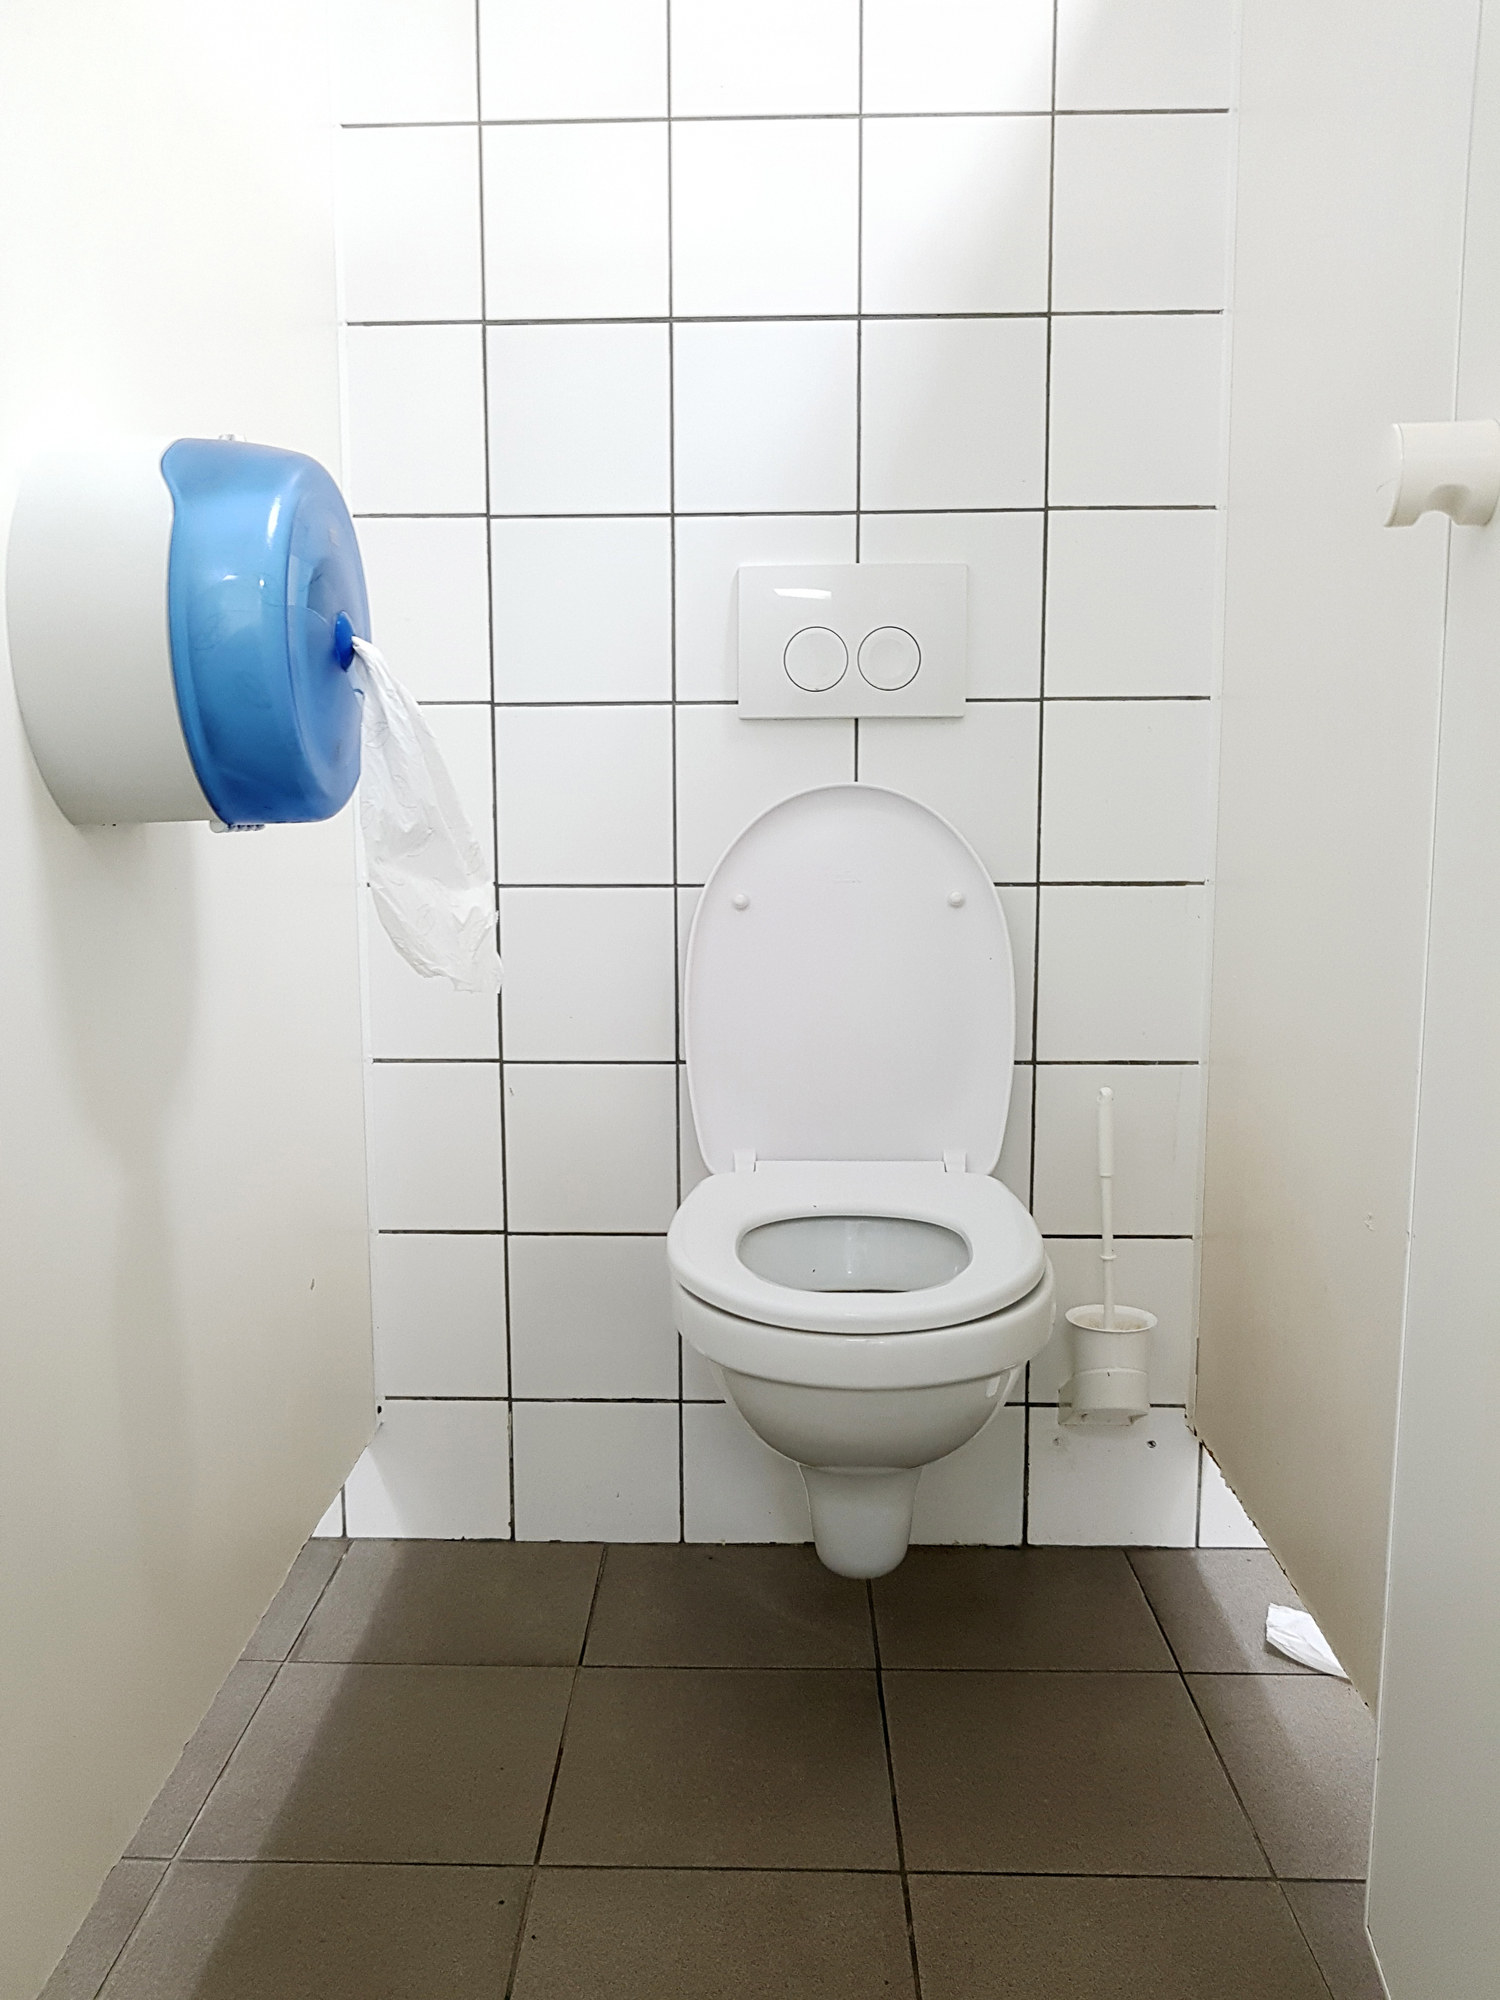 Public Toilet Cubicle